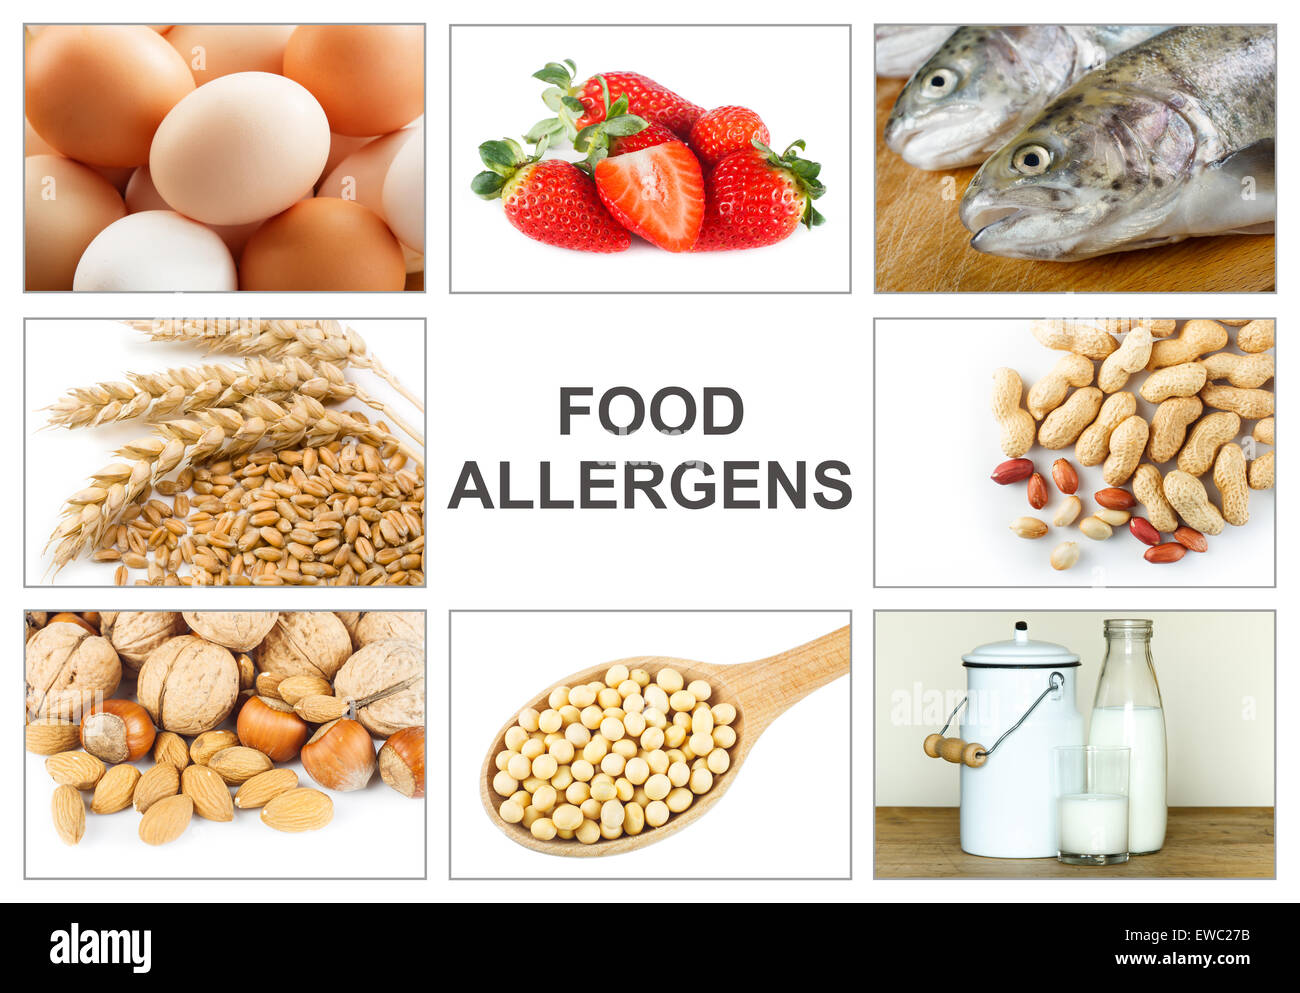 Allergie-Food-Konzept. Nahrungsmittelallergene wie Eiern, Milch, Obst, Baumnüsse, Erdnüsse, Soja, Weizen und Fisch. Text "Lebensmittel-Allergene" leicht zu Stockfoto